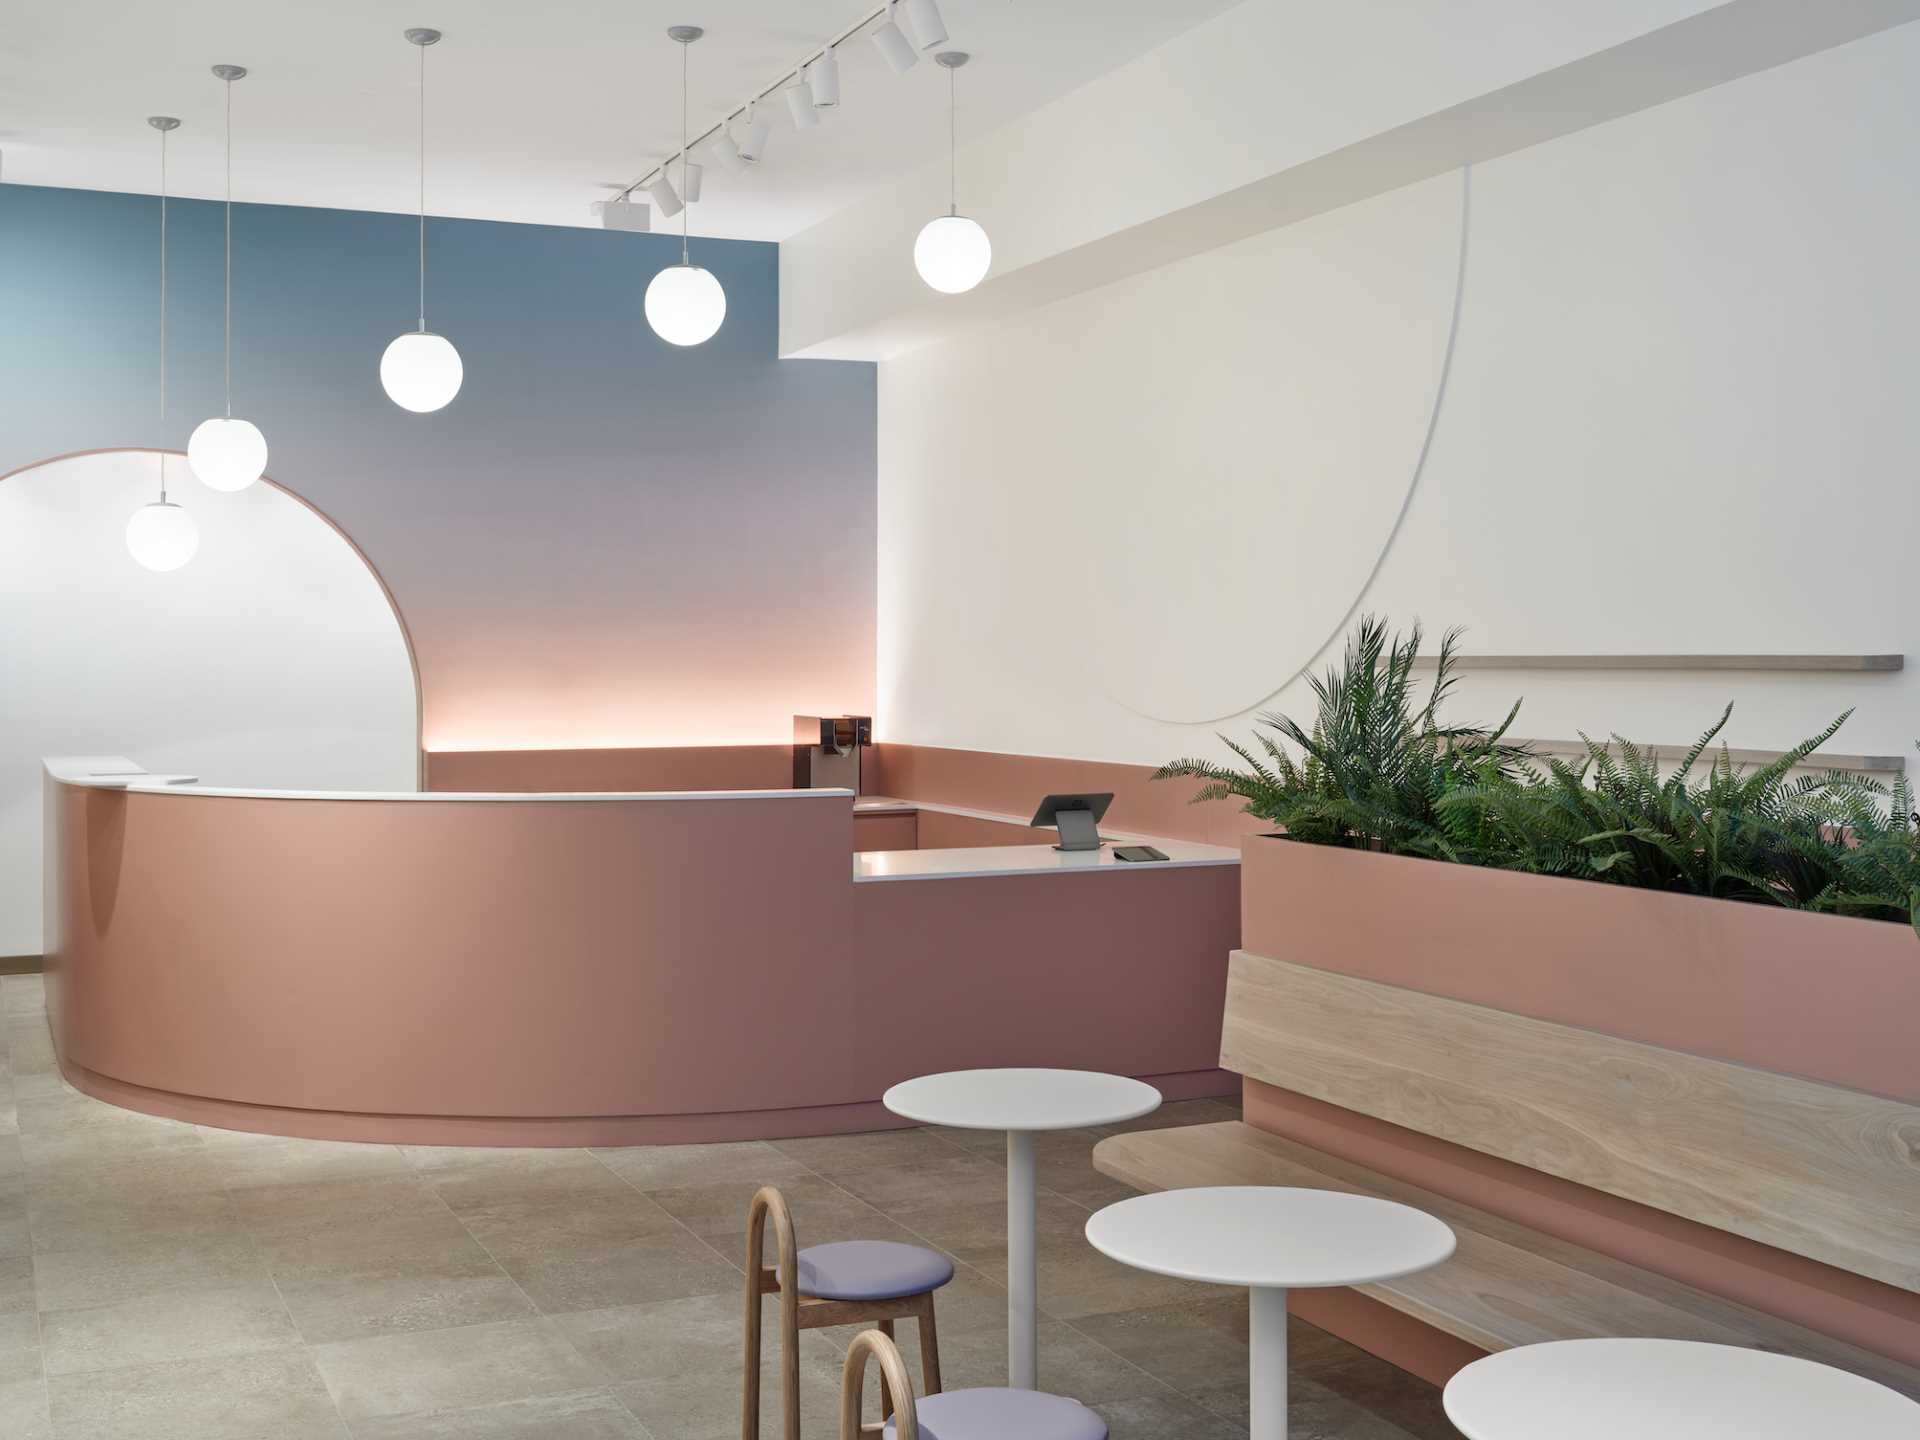 یک کافه مدرن با فضایی آرام و آرام، دیواری رنگارنگ.  و طرح های منحنی